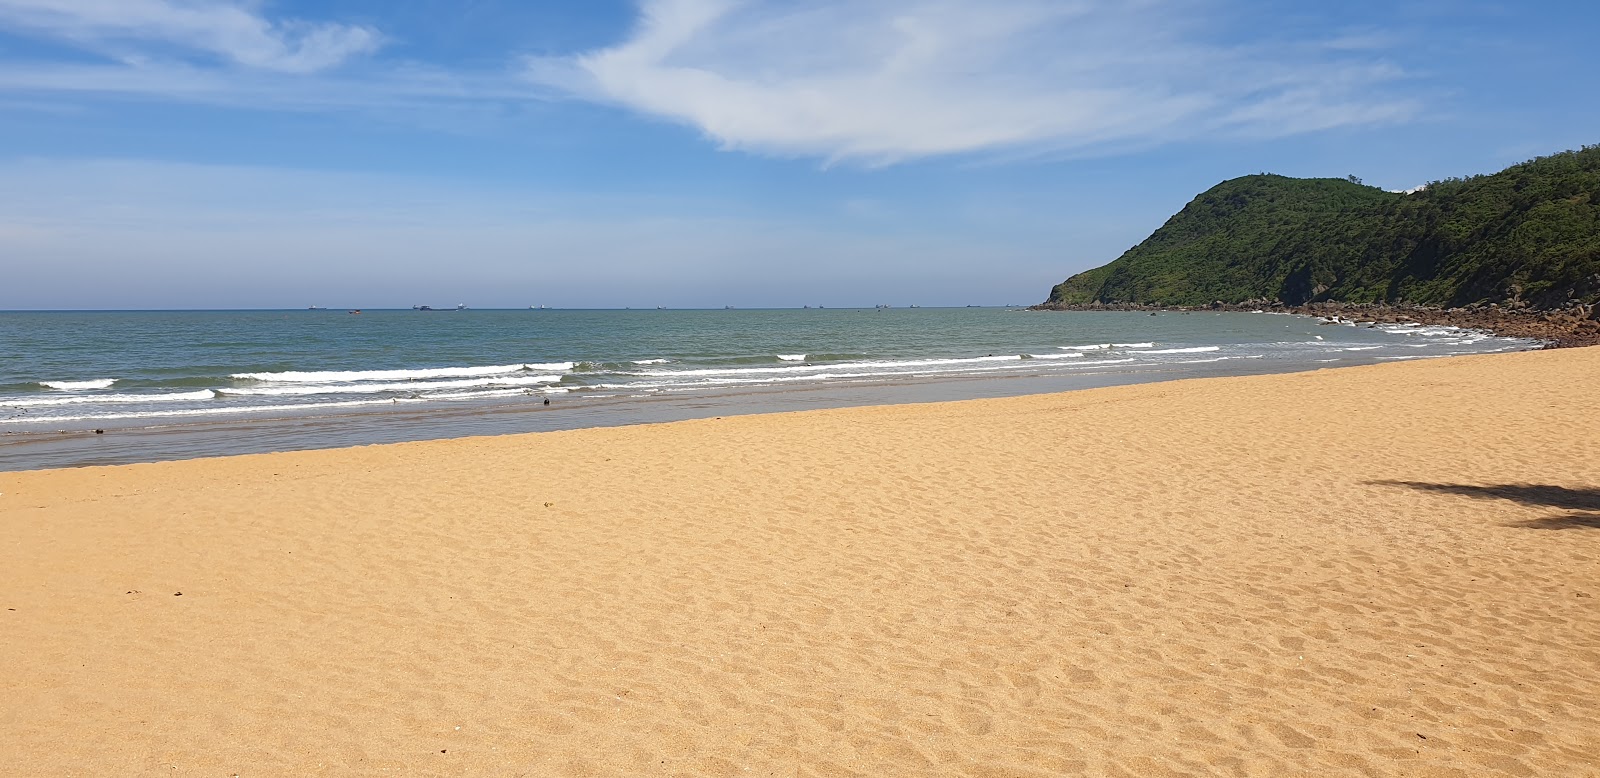 Foto di Bai Dong Beach con una superficie del sabbia fine e luminosa